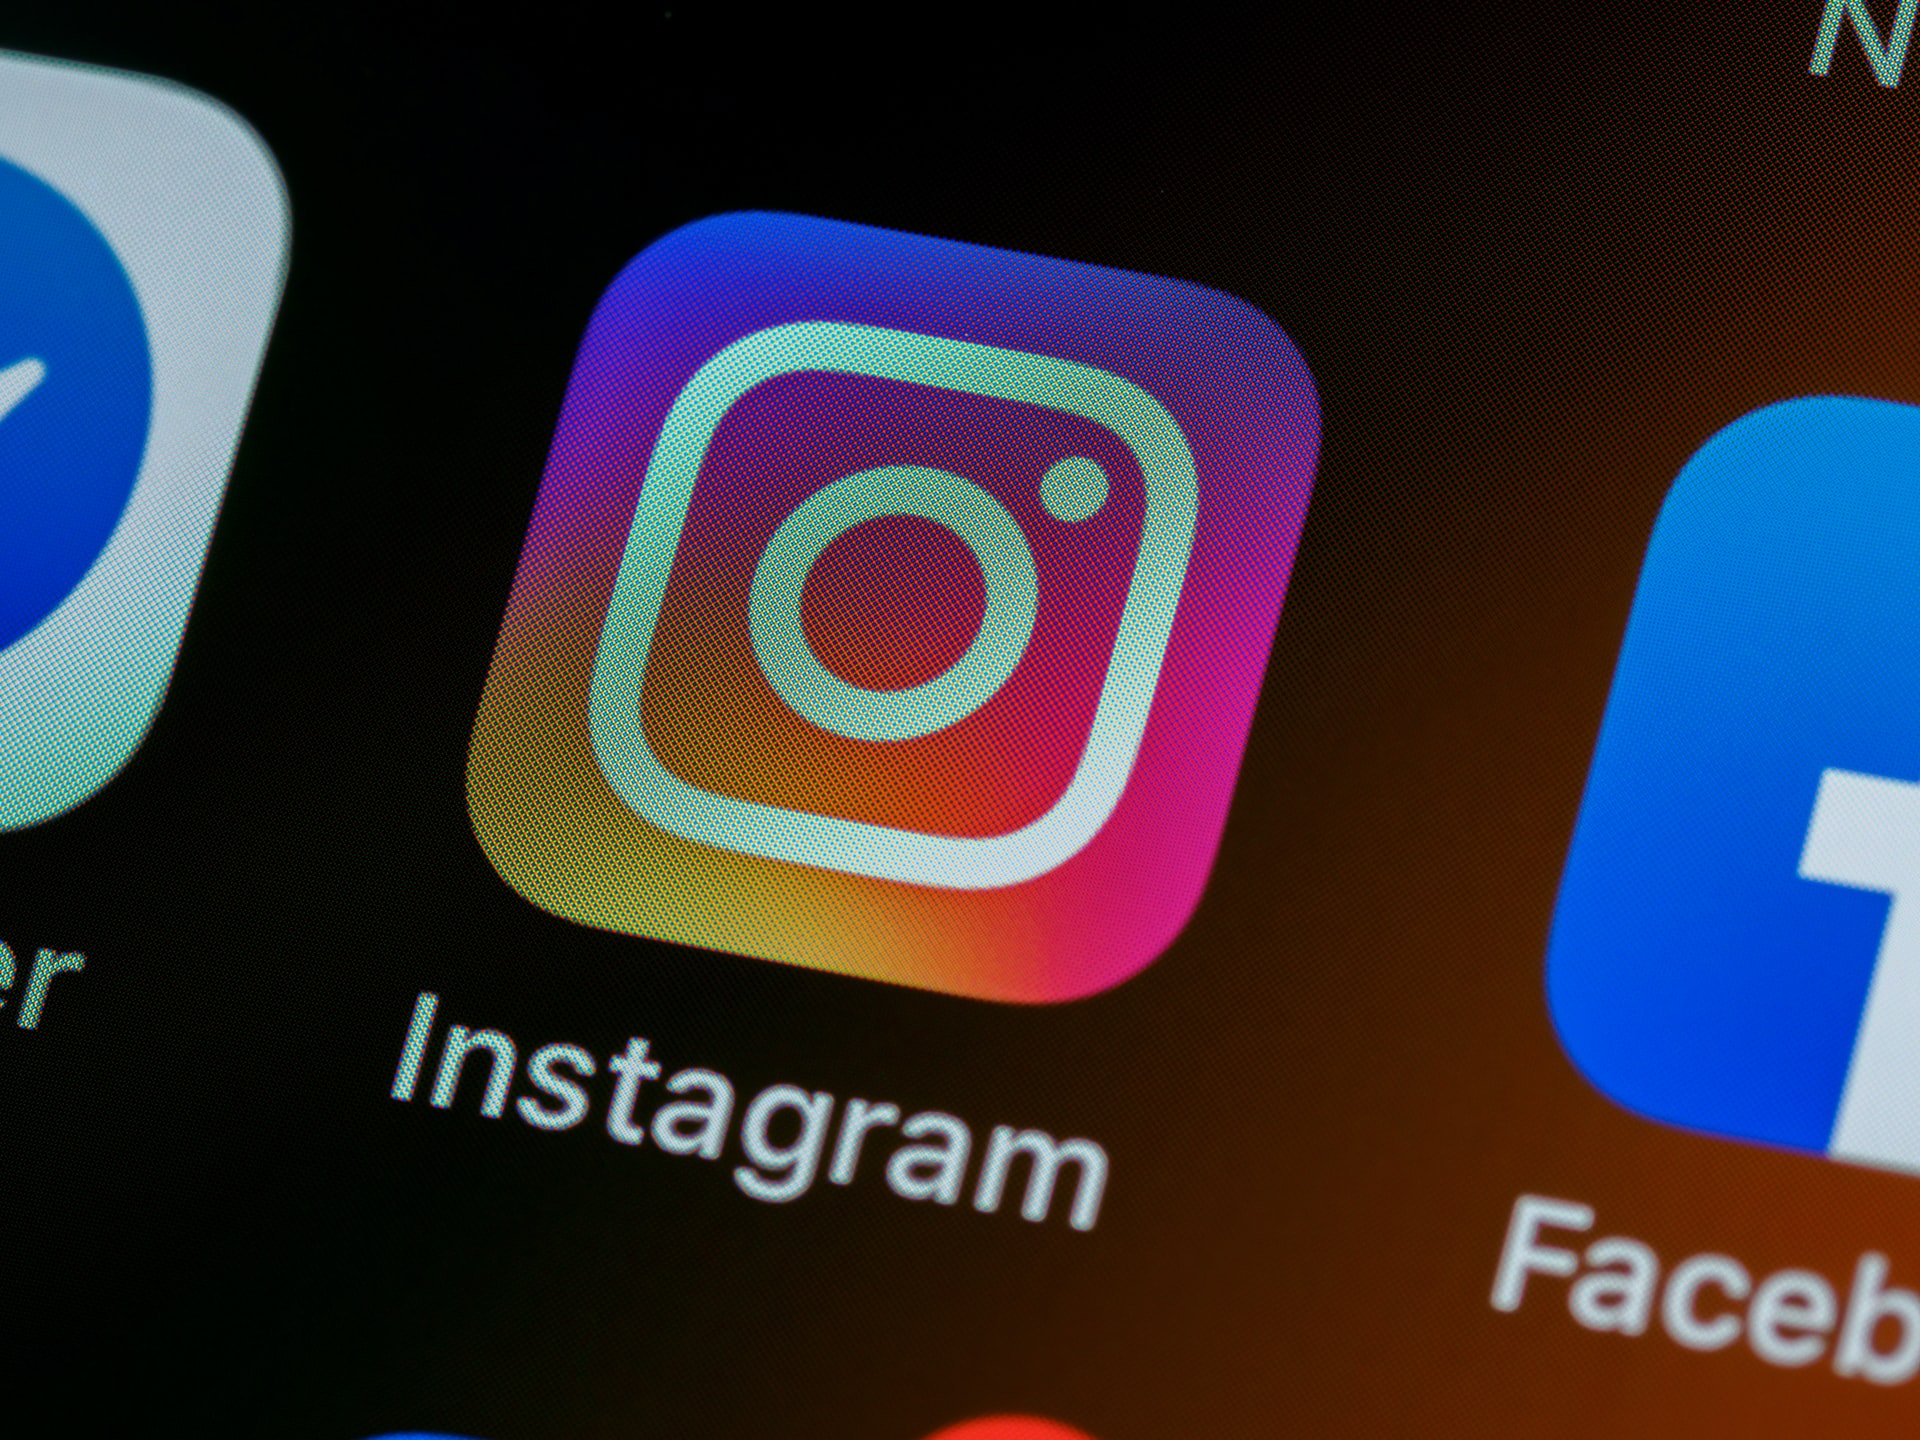 Instagram wprowadza weryfikację tożsamości za pomocą wideo selfies